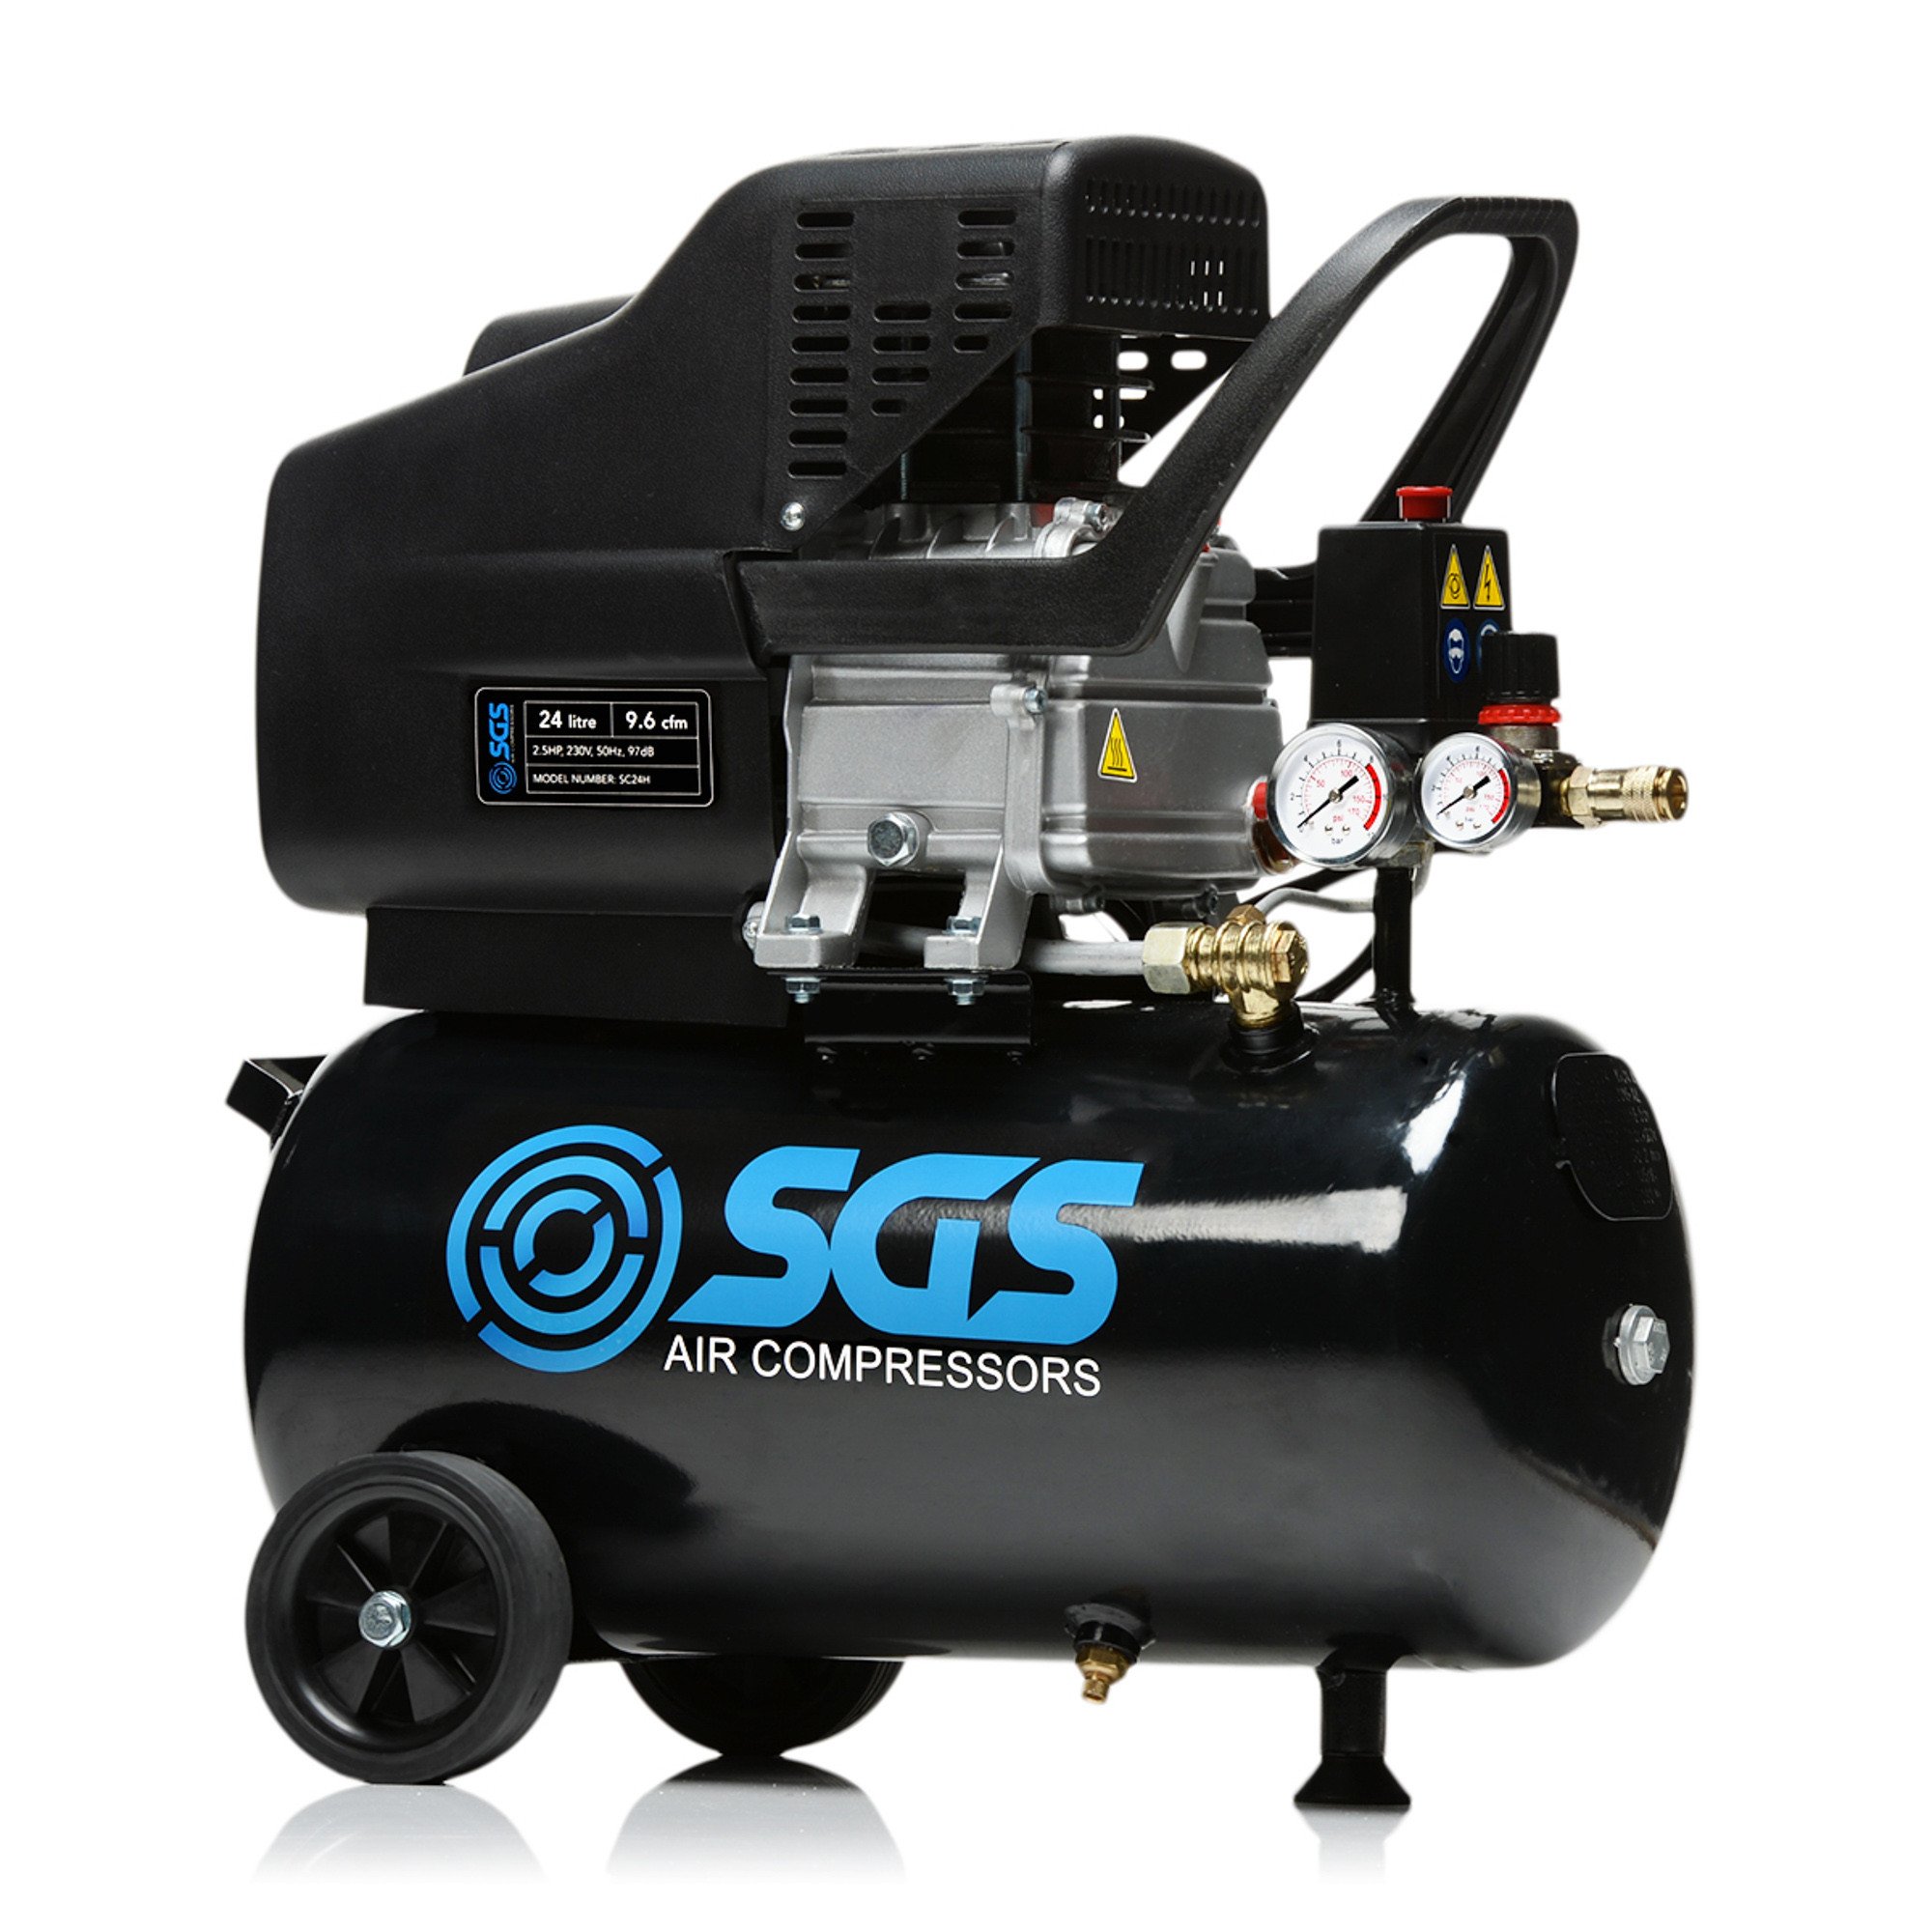 SGS 24升直接驱动空气压缩机2.5 - 9.6 cfm惠普24 l